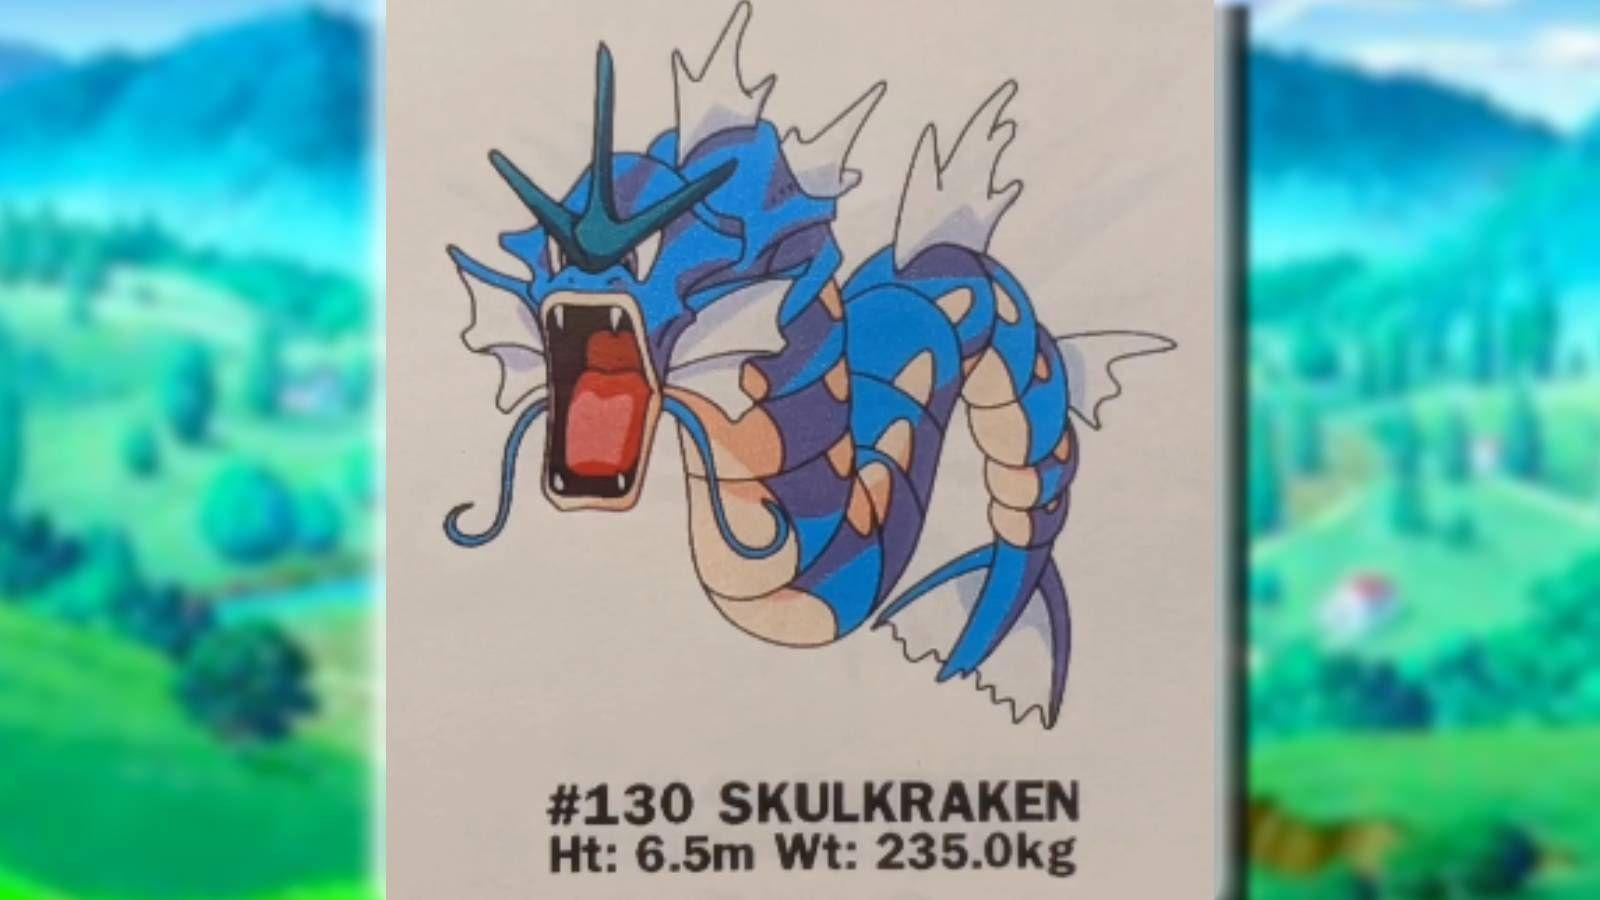 Skulkraken Gyarados with Pokemon background.